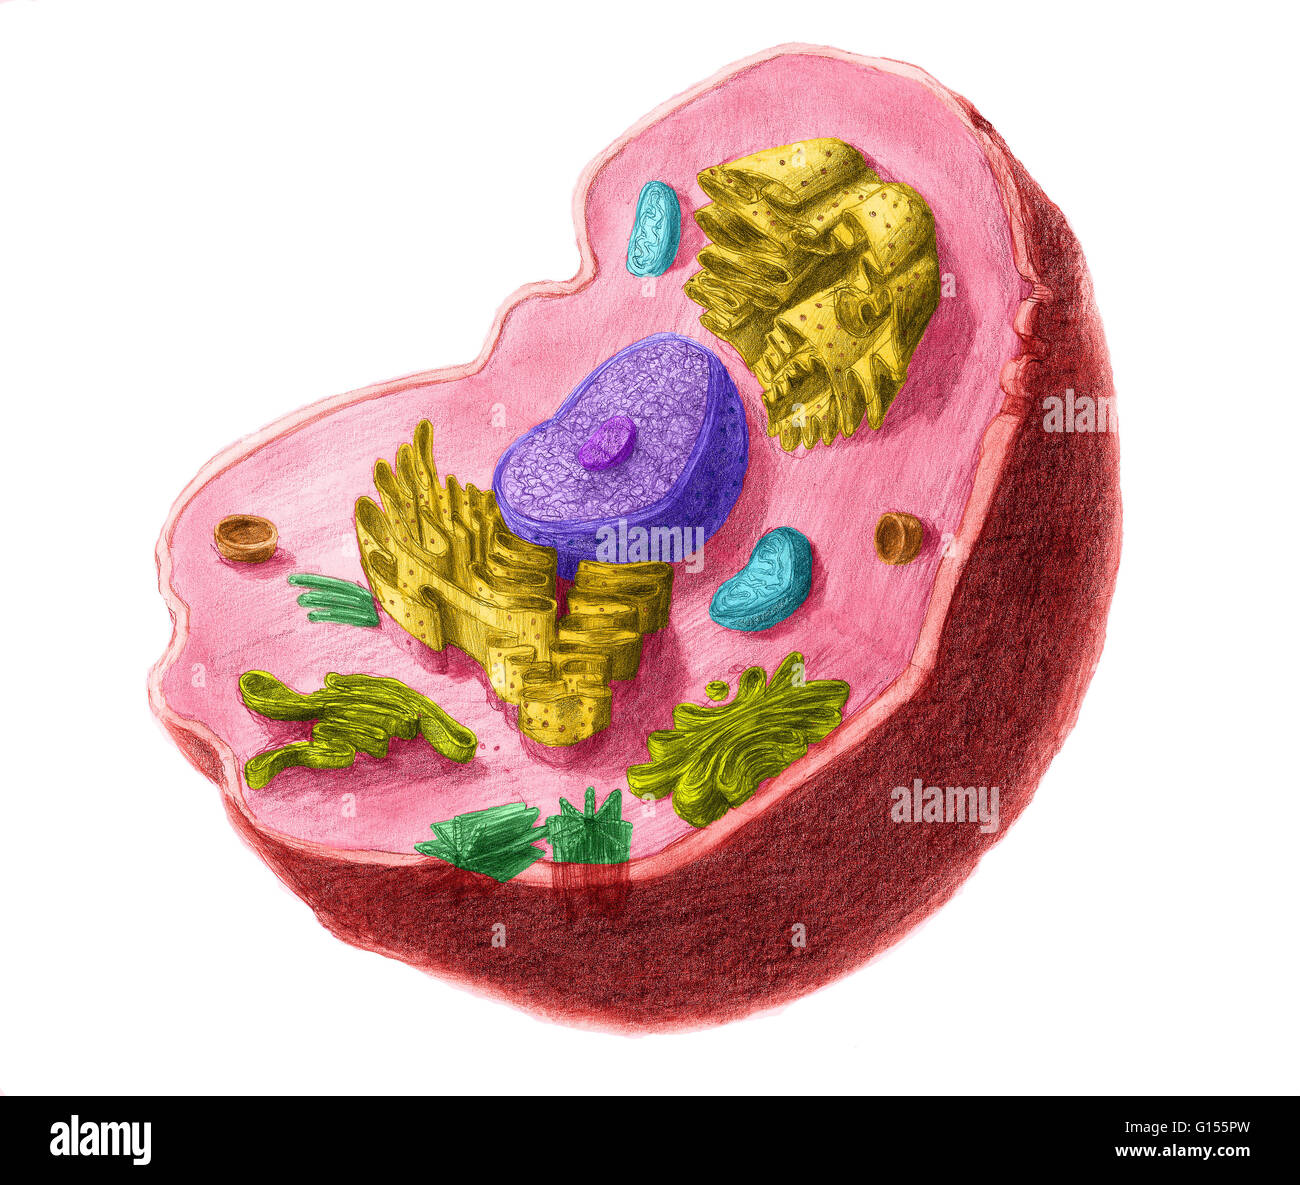 Colore illustartion avanzata di una cellula animale. La cella ha un nucleo nel suo centro, che contiene chromatine costituito da DNA e nucleole, composto da RNA e proteine. Attorno al nucleo troviamo il reticolo endoplasmatico, quindi l'apparato di Golgi di apparecchiatura Foto Stock